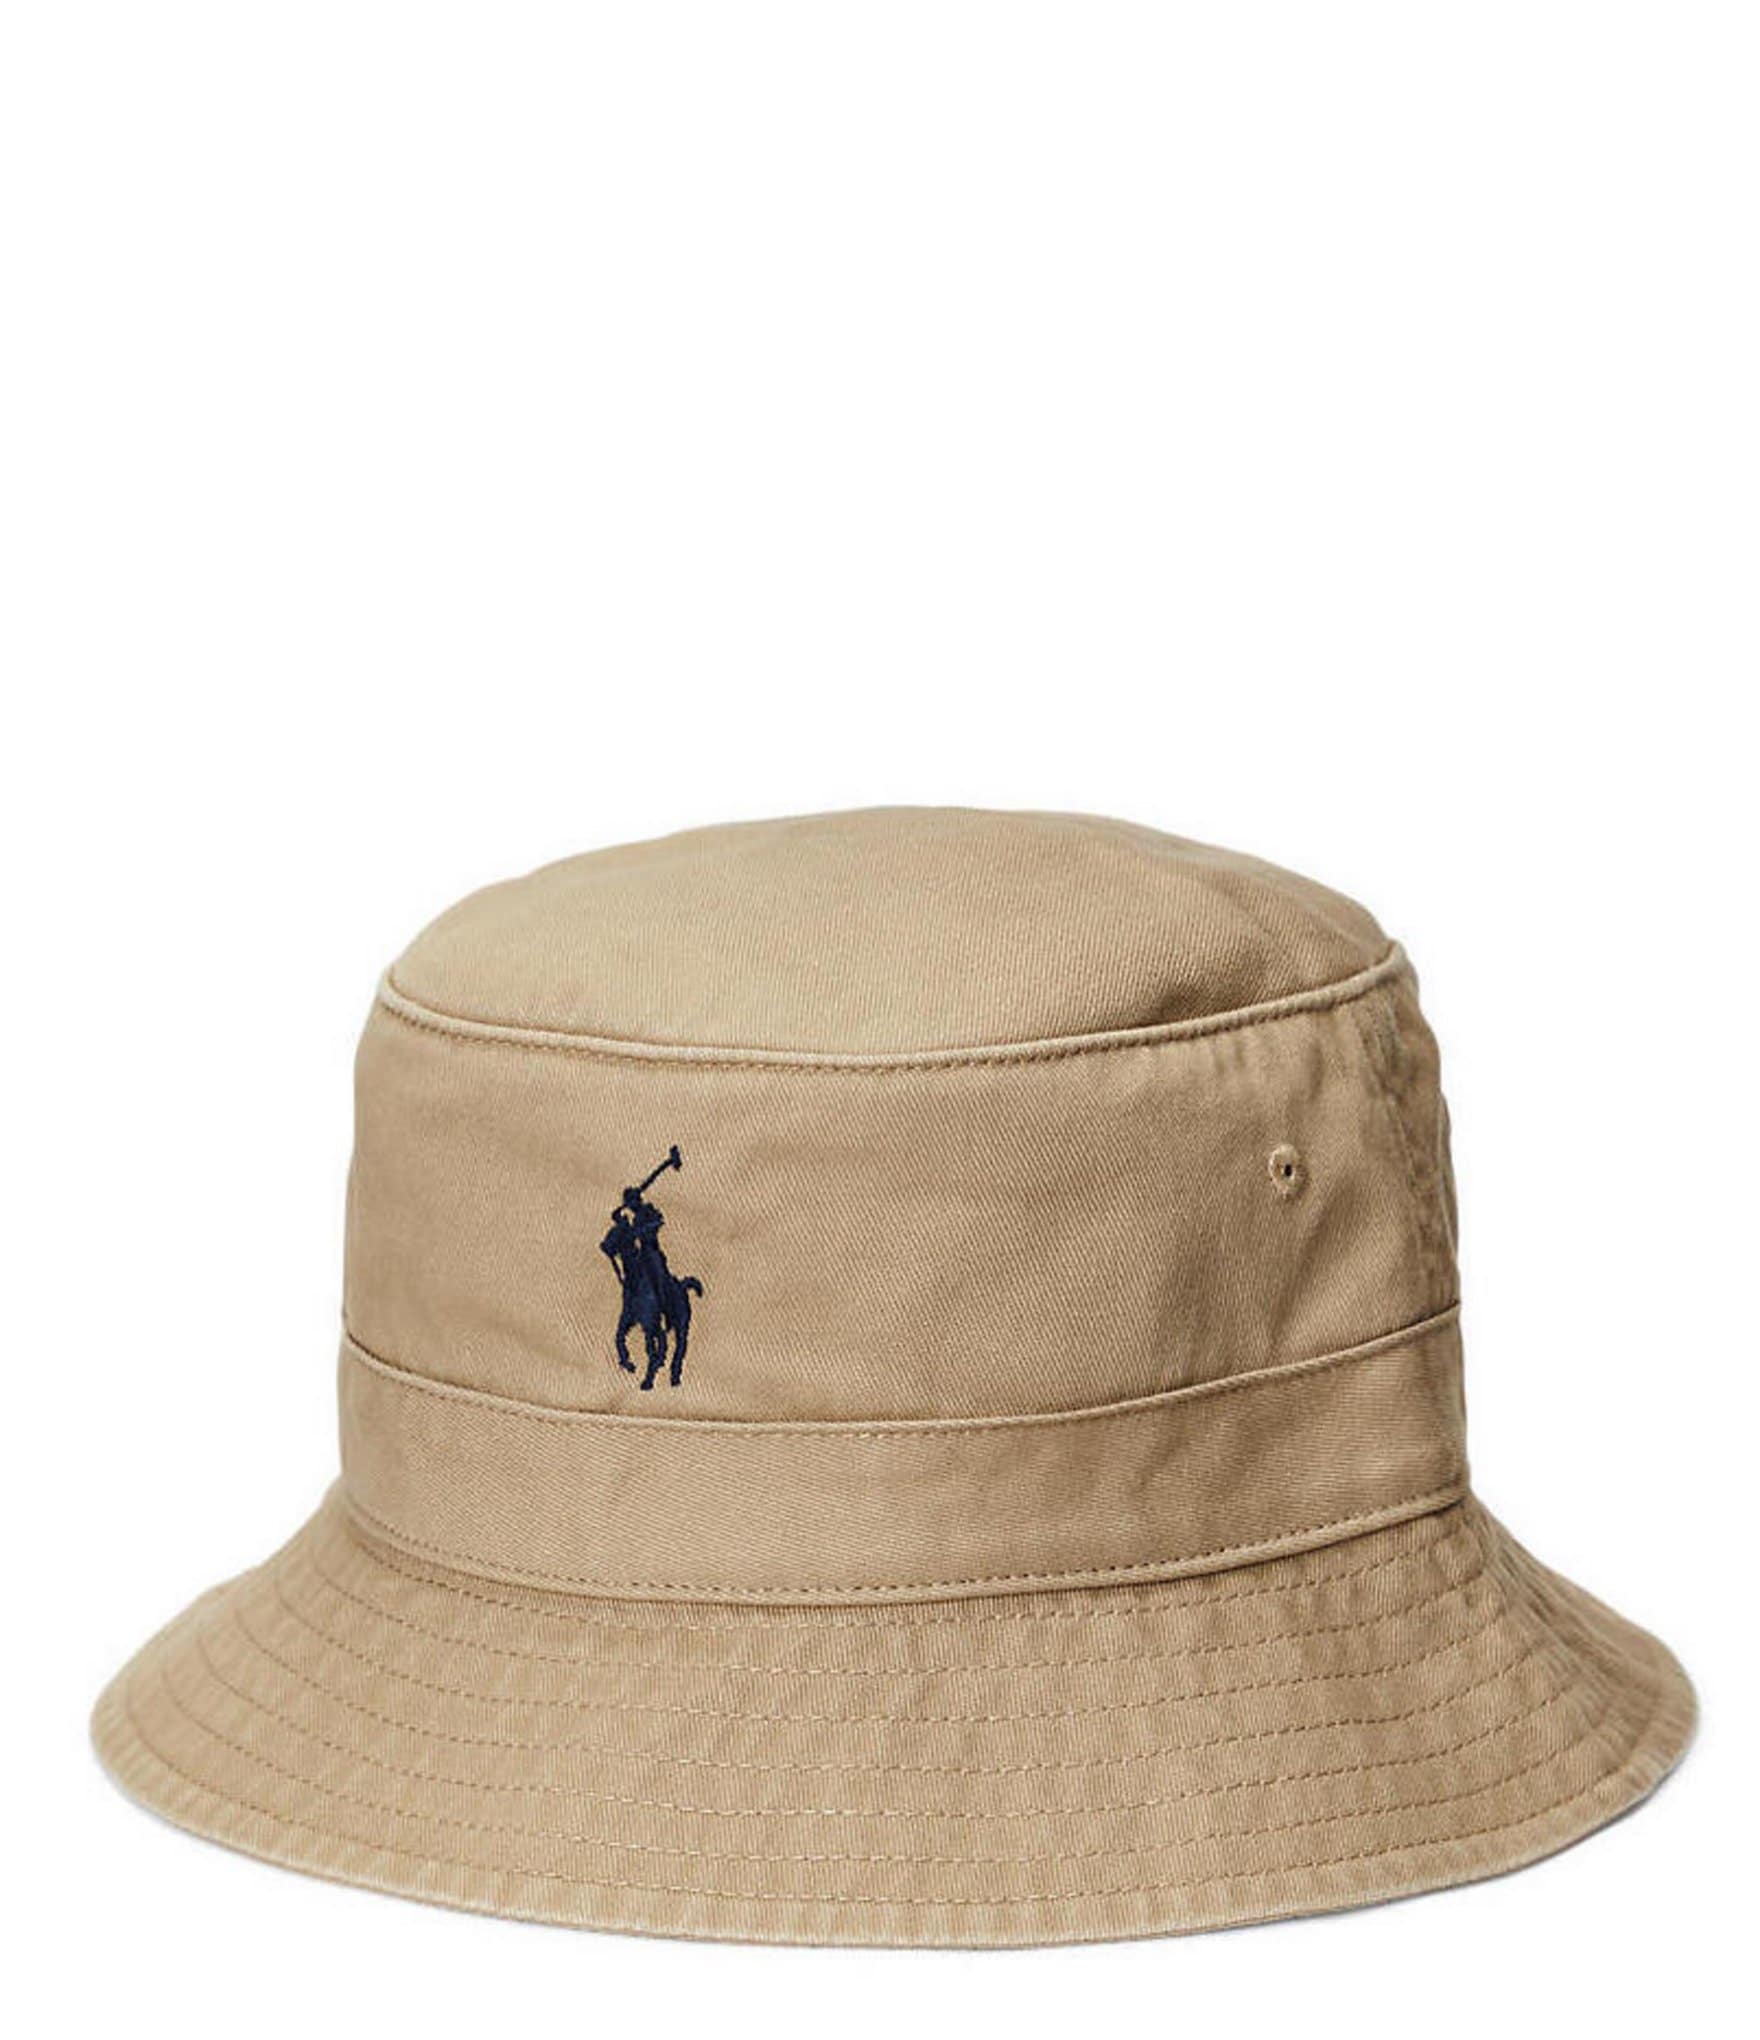 Channel Islands Traveler Men's Bucket Hat, Black